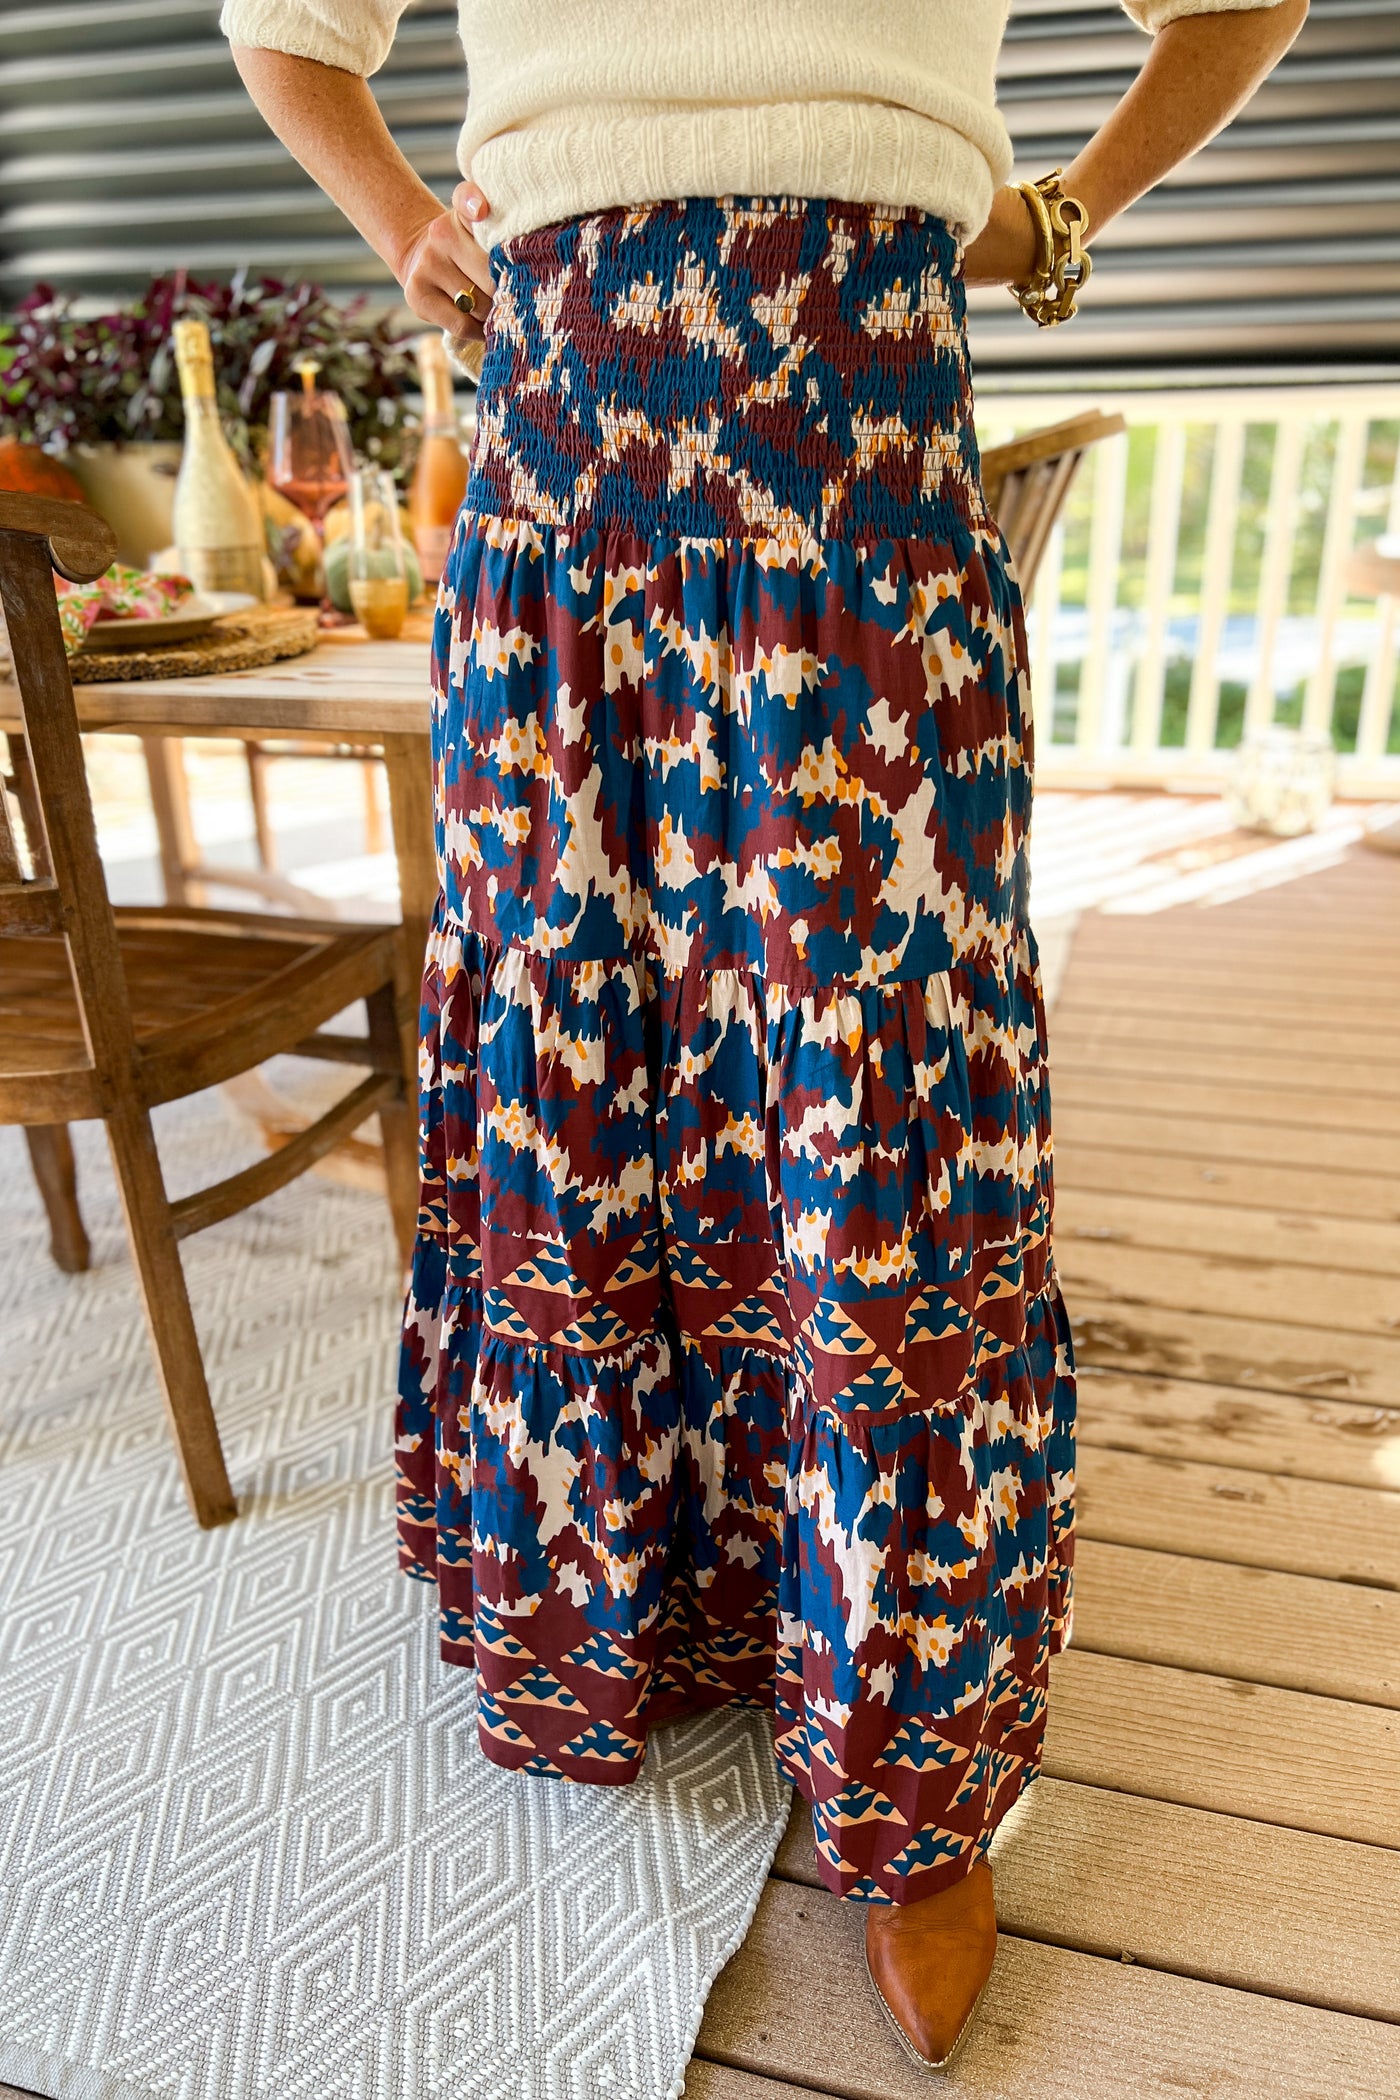 Seaside skirt, tribal print